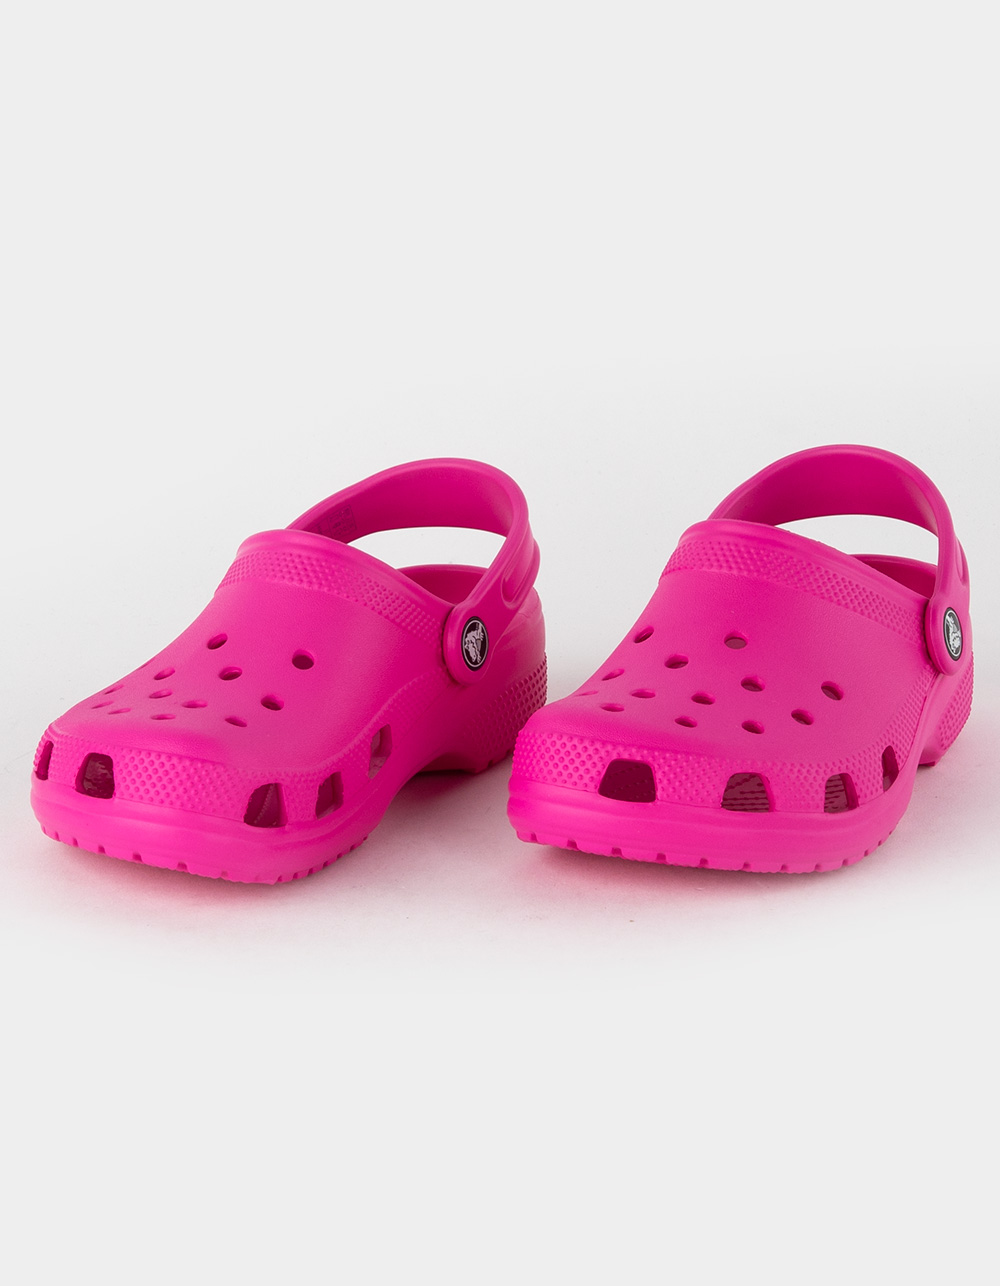 Crocs Kids Classic Clogs